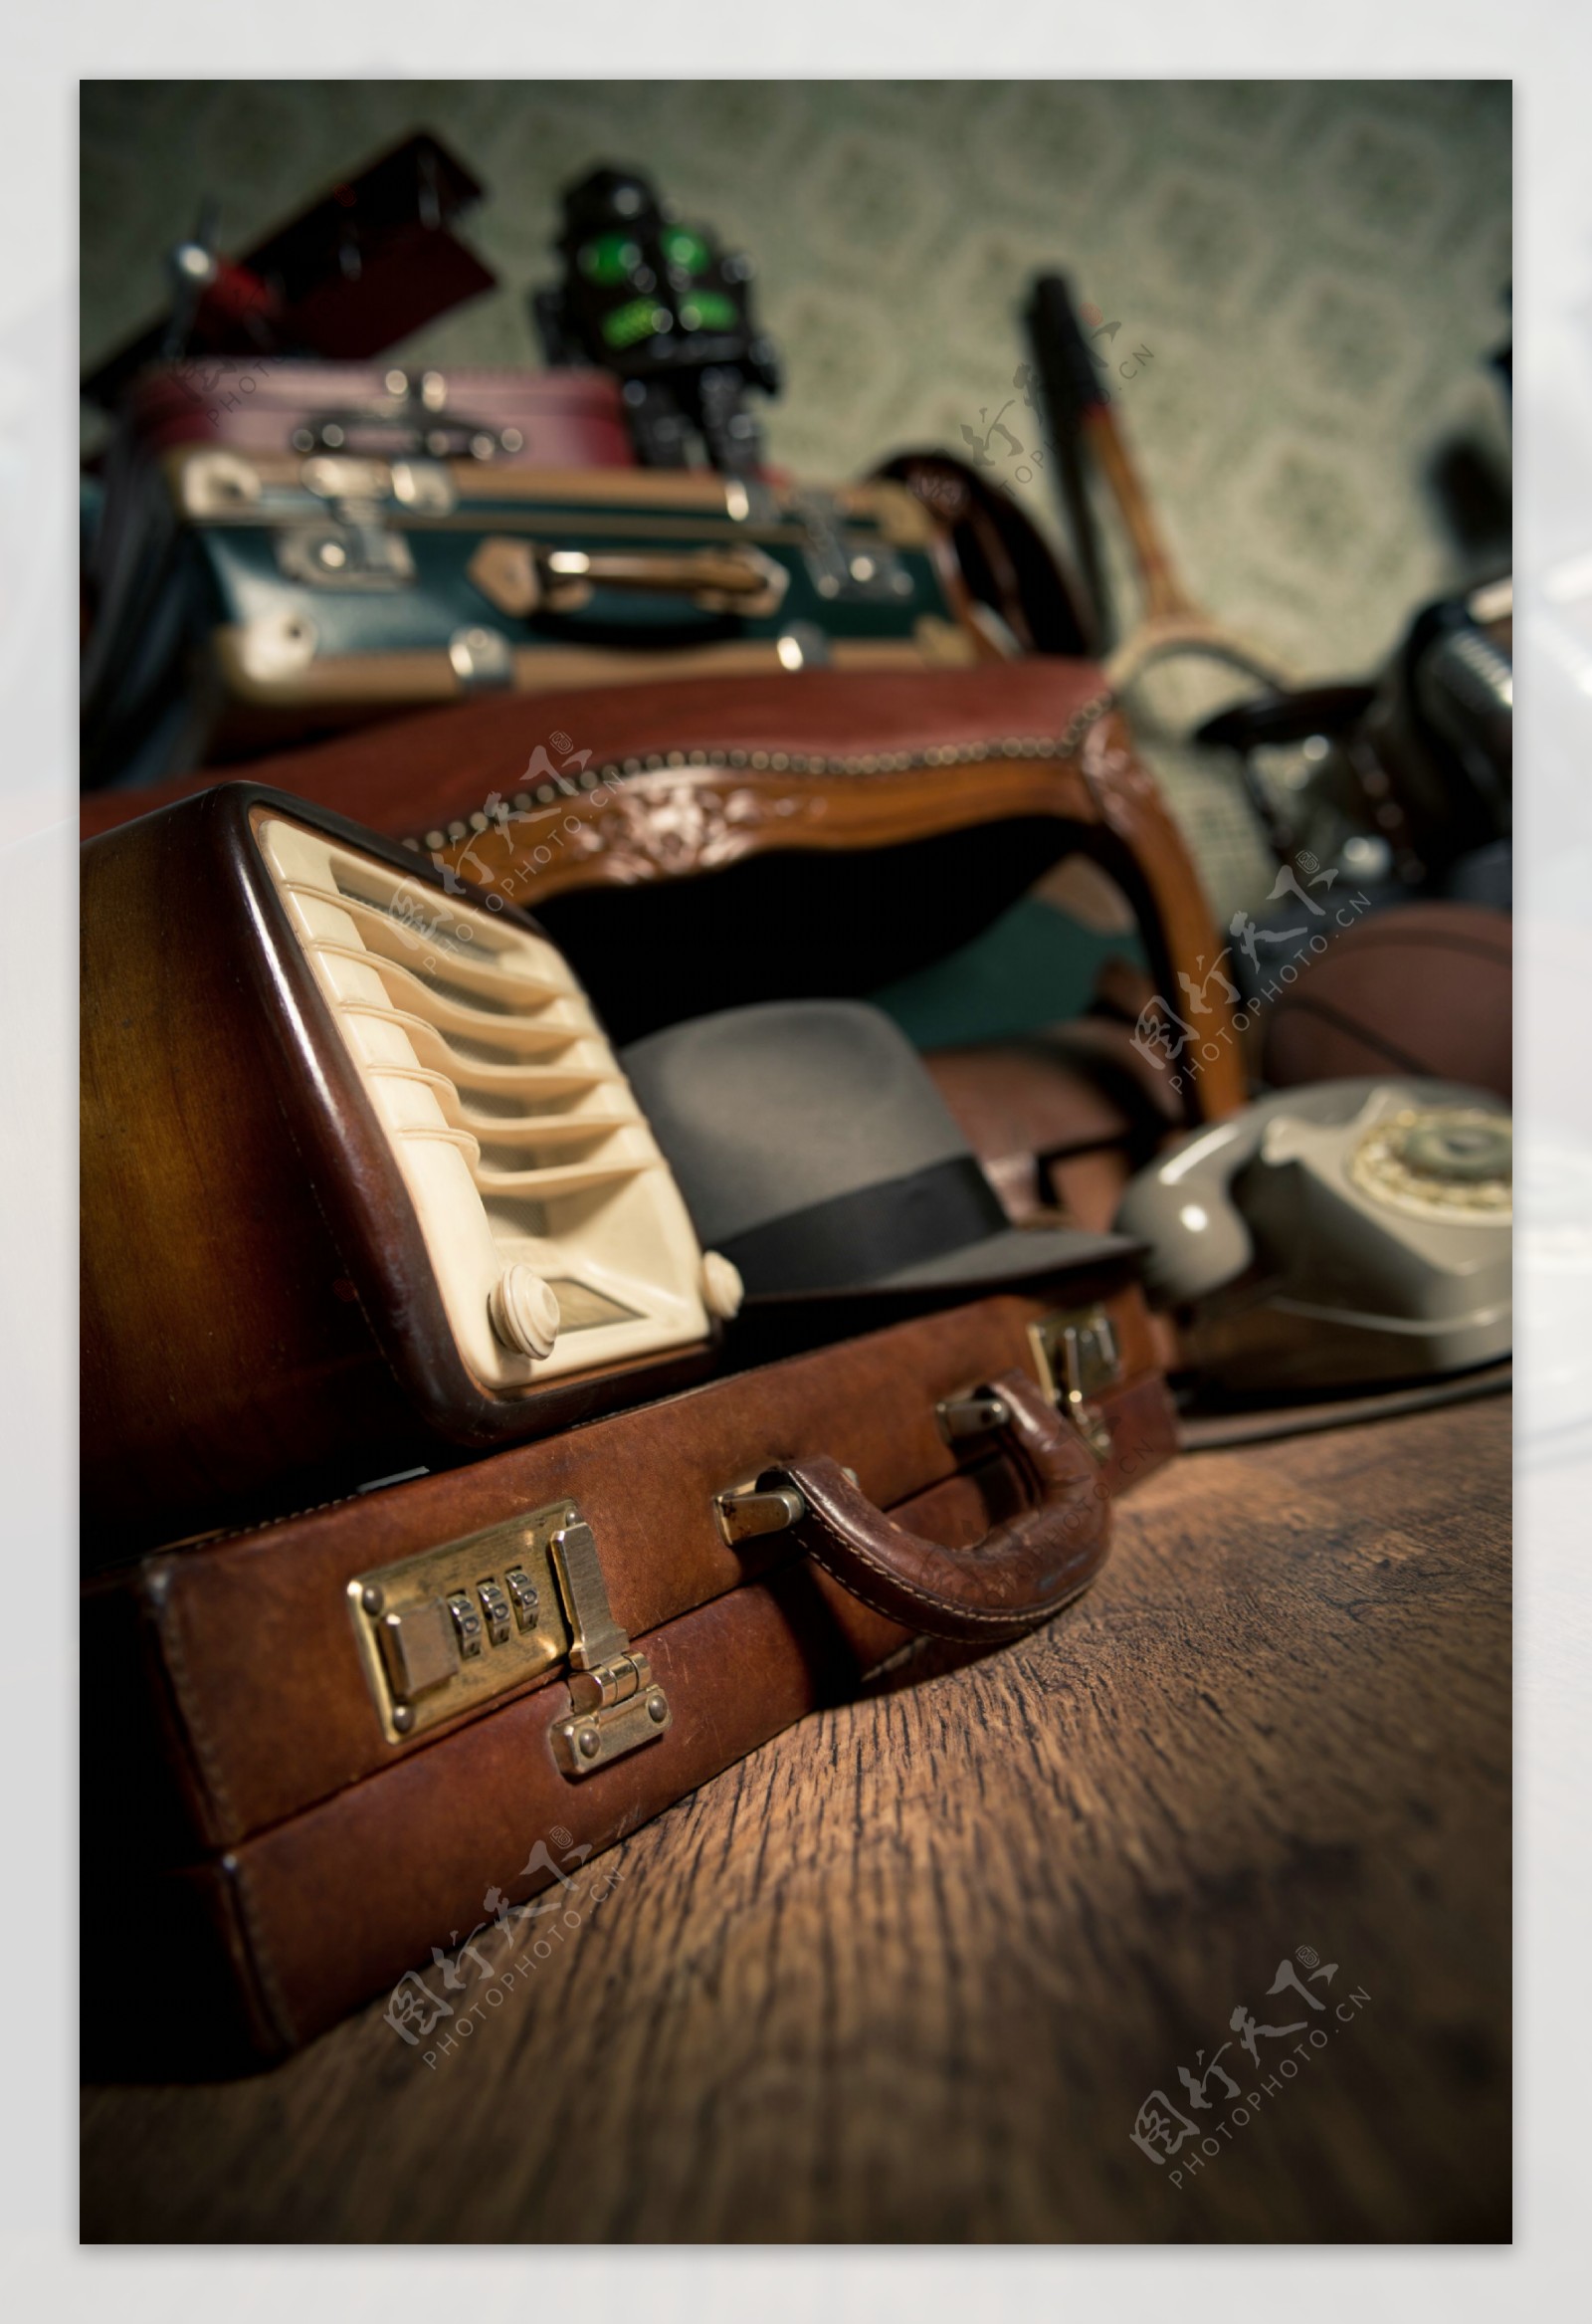 老式收音机与行李箱图片